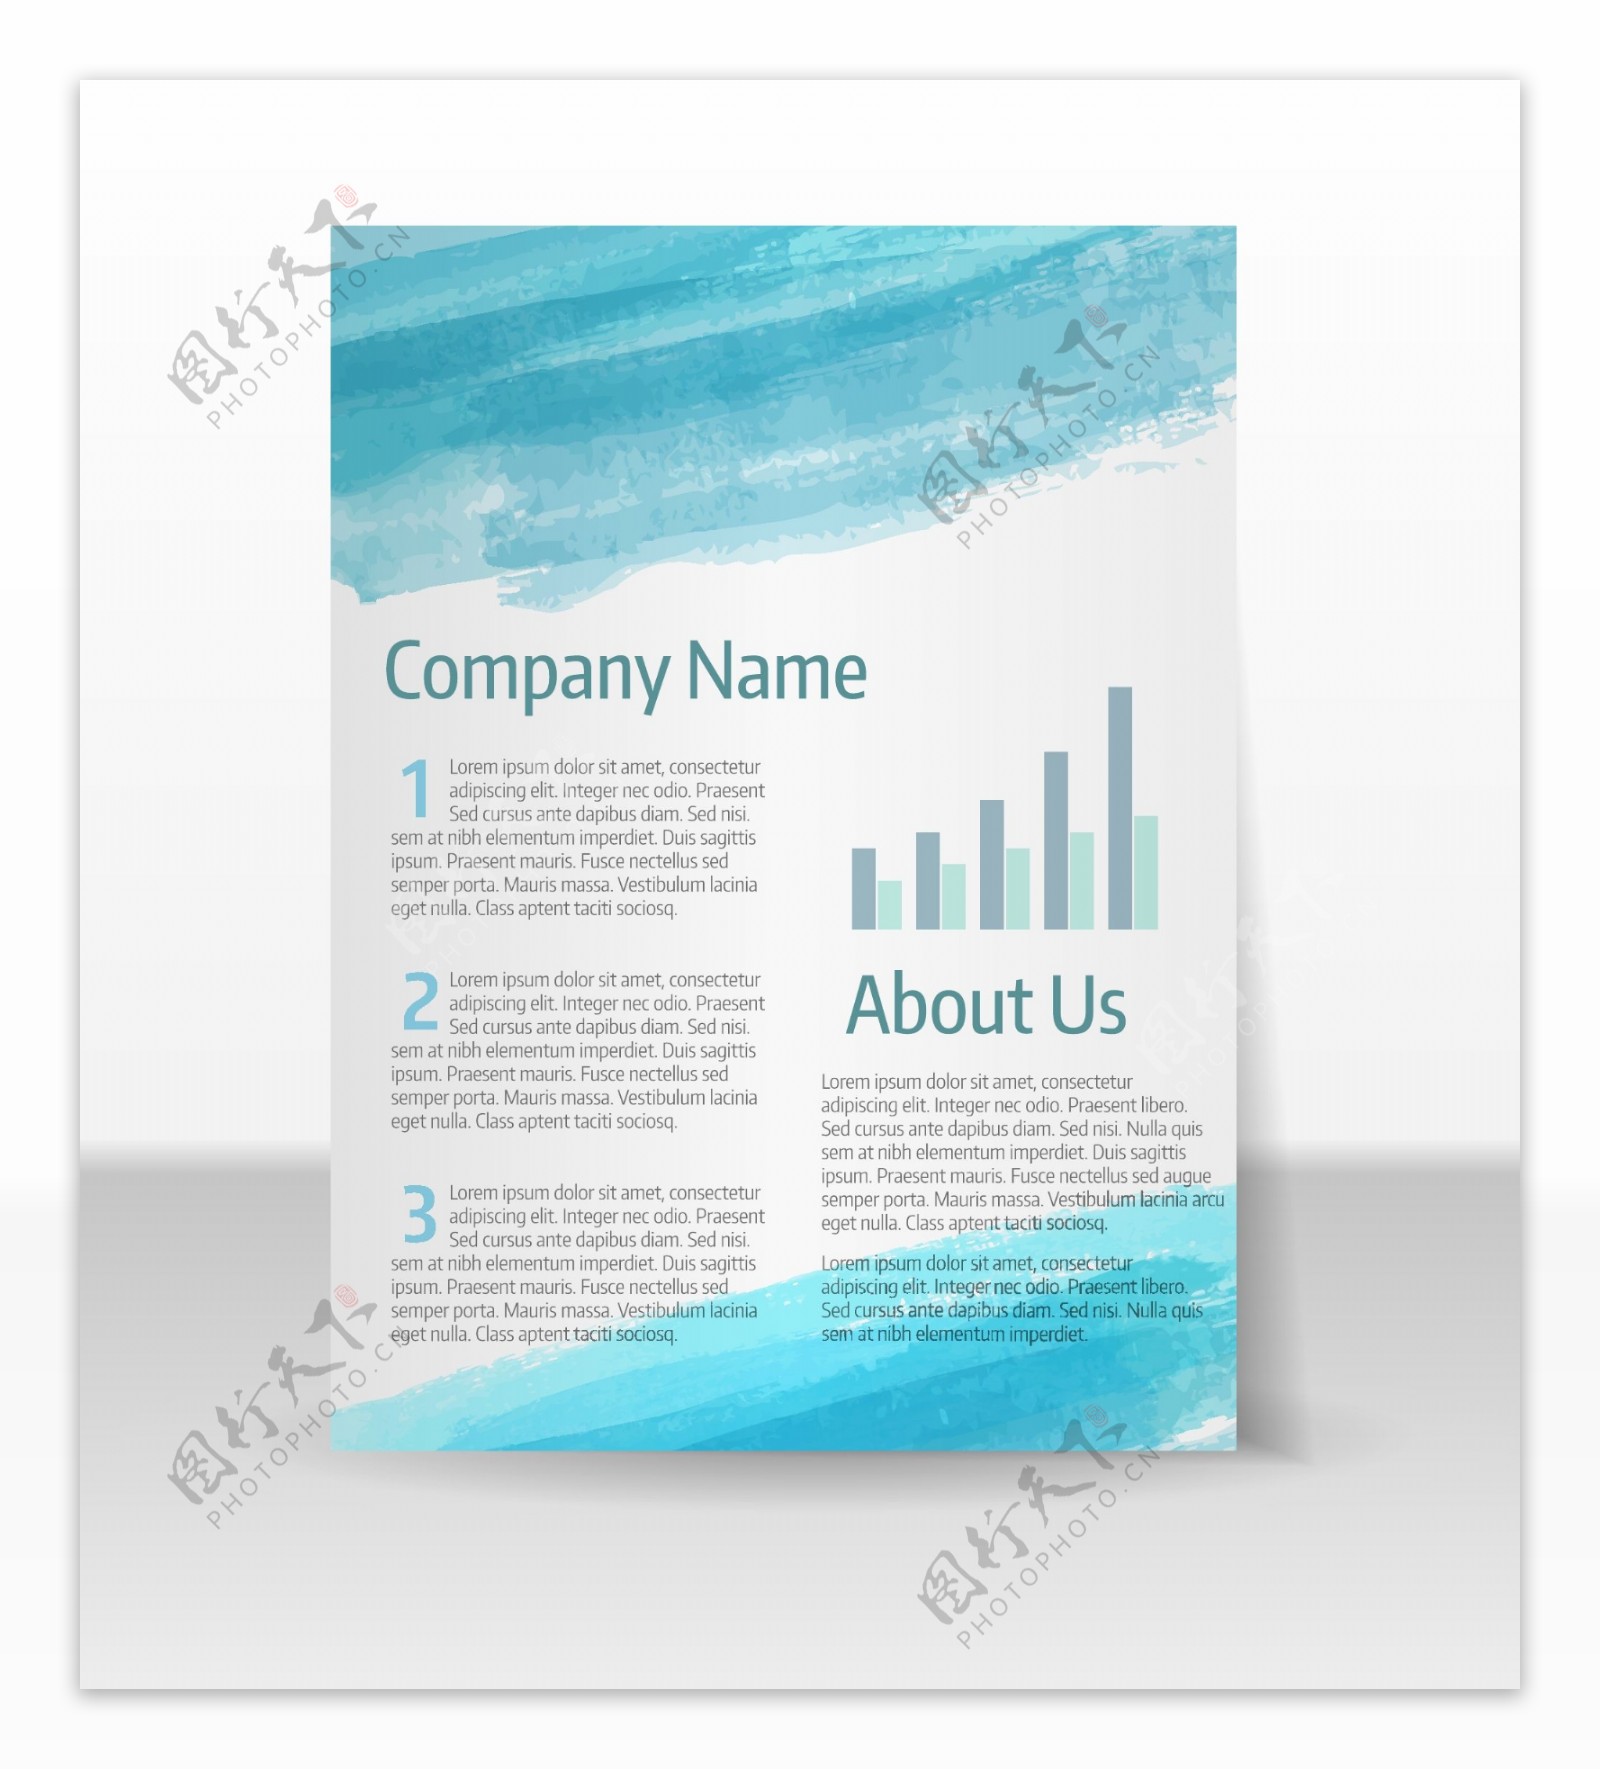 水彩涂抹简约企业单页设计矢量模板